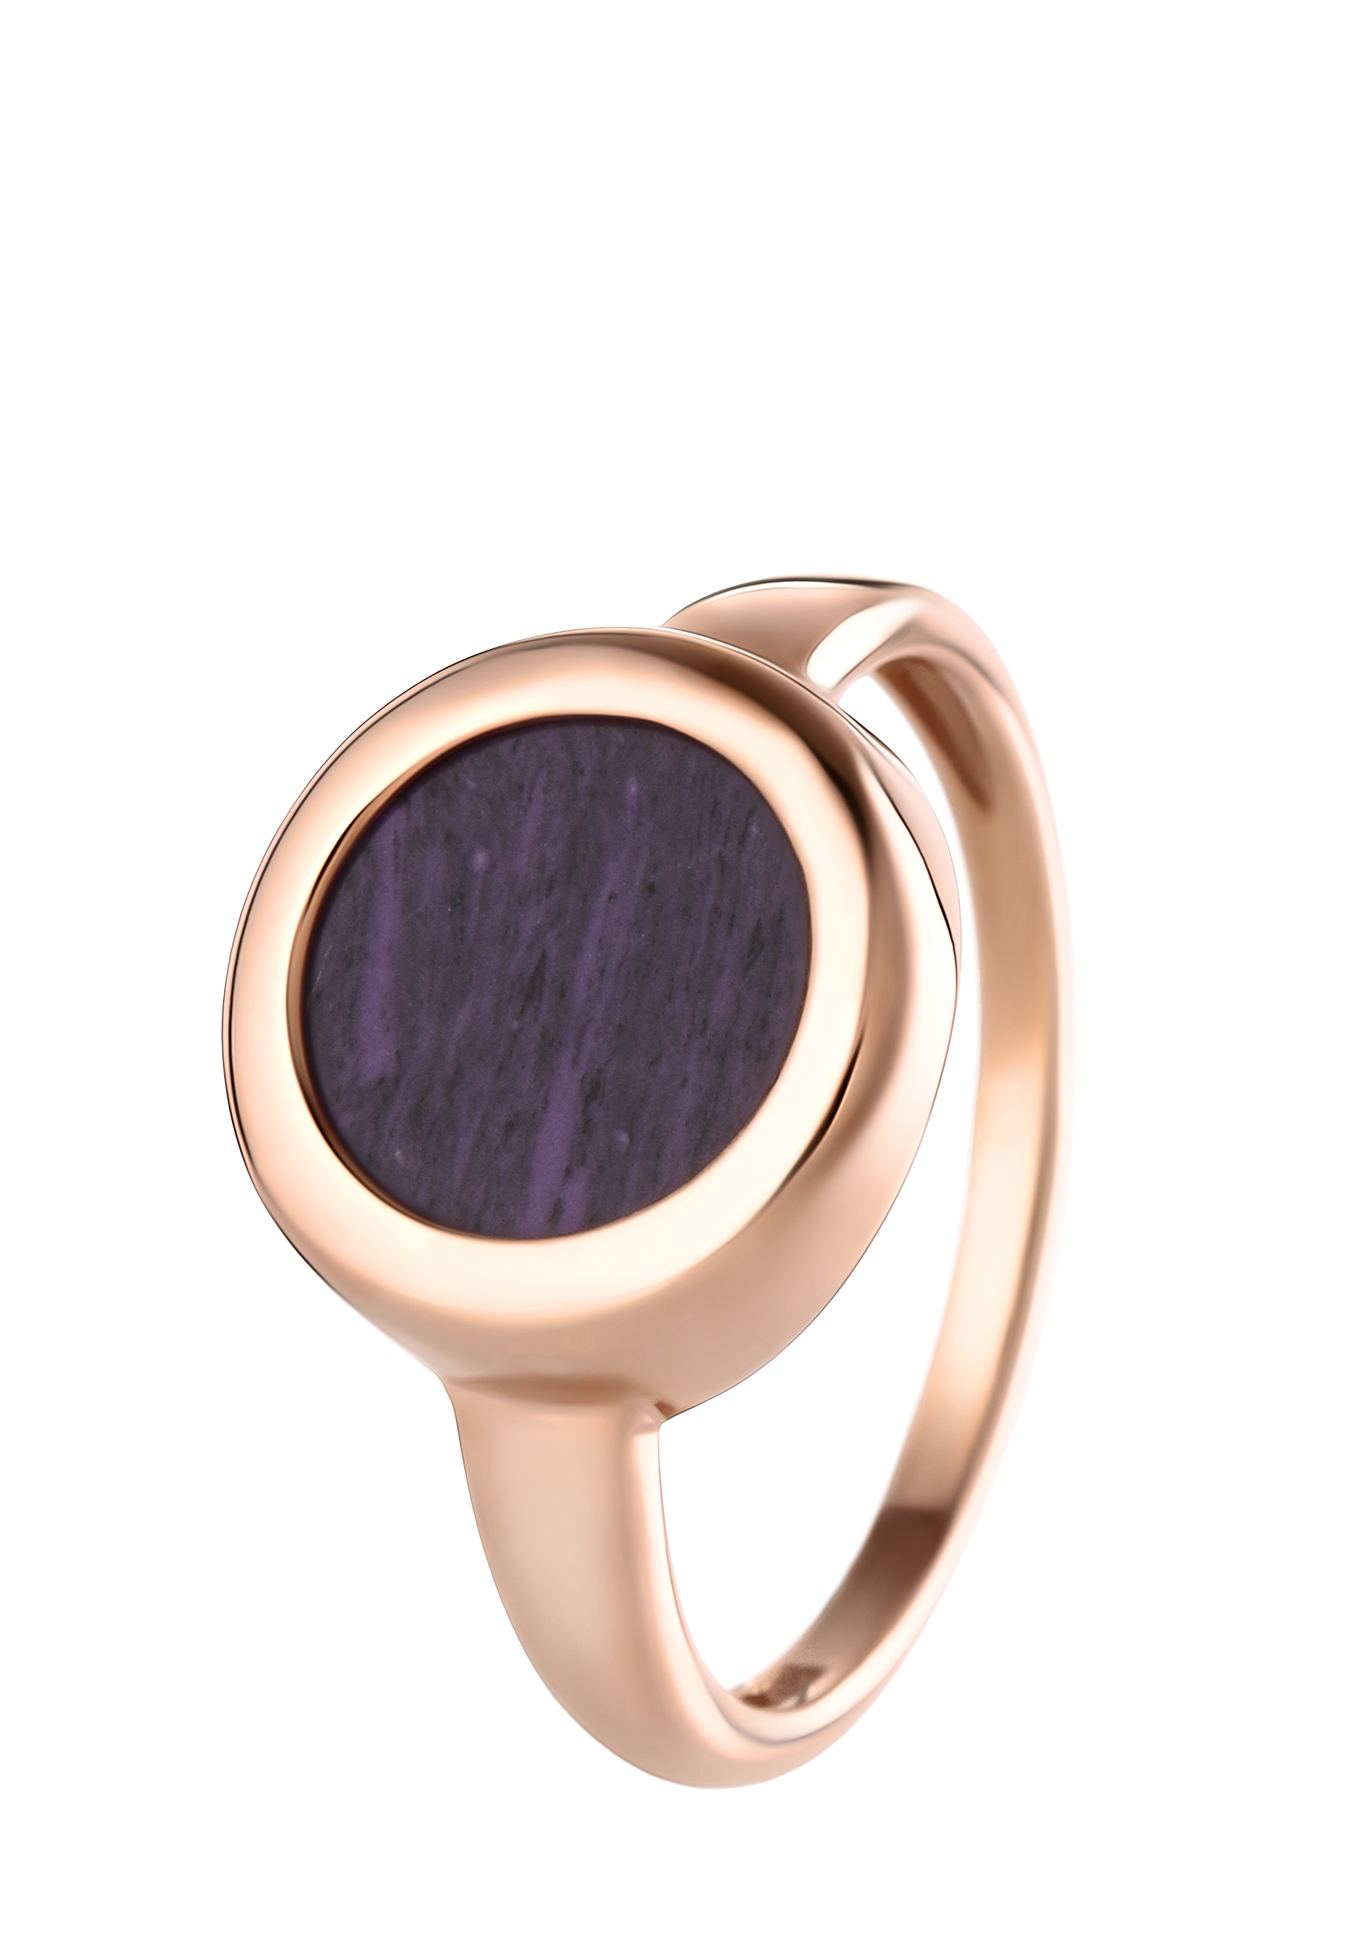 Серебряное кольцо "Блестящий вкус" Бриллианит Серебряная линия, цвет фиолетовый, размер 17 солитер - фото 1